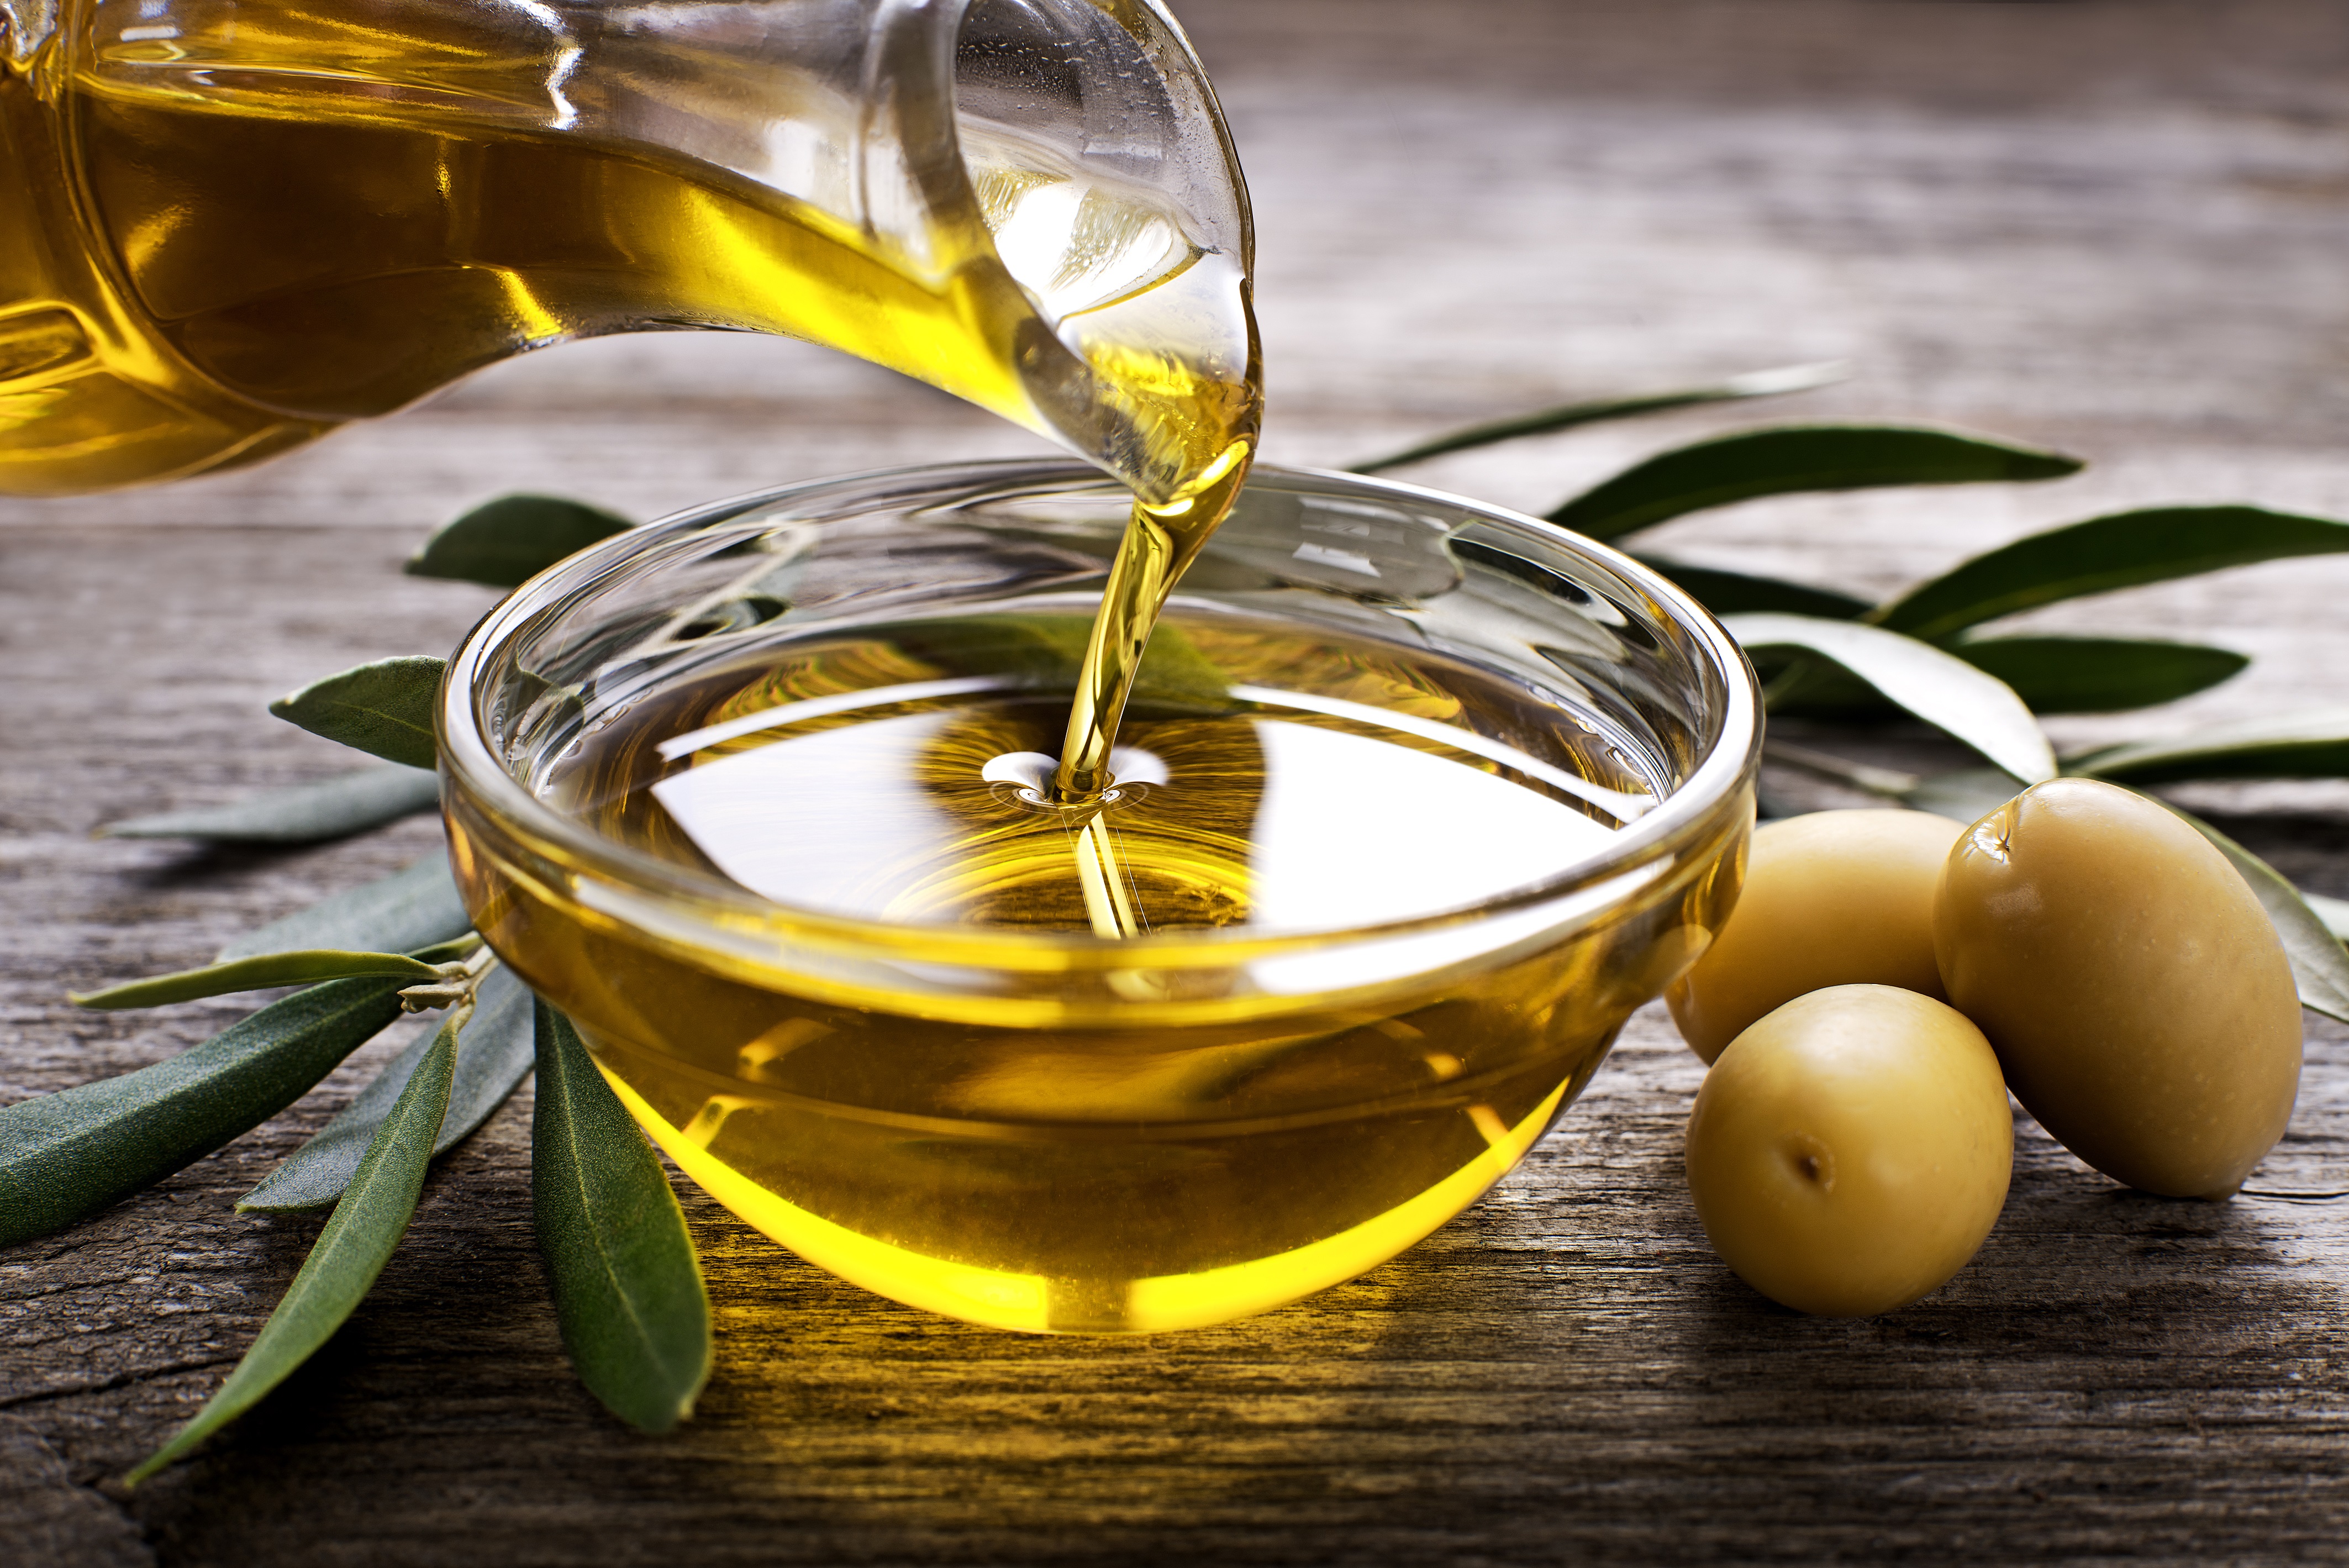 L'oli d'oliva és un producte d’un gran interès econòmic i empresarial.